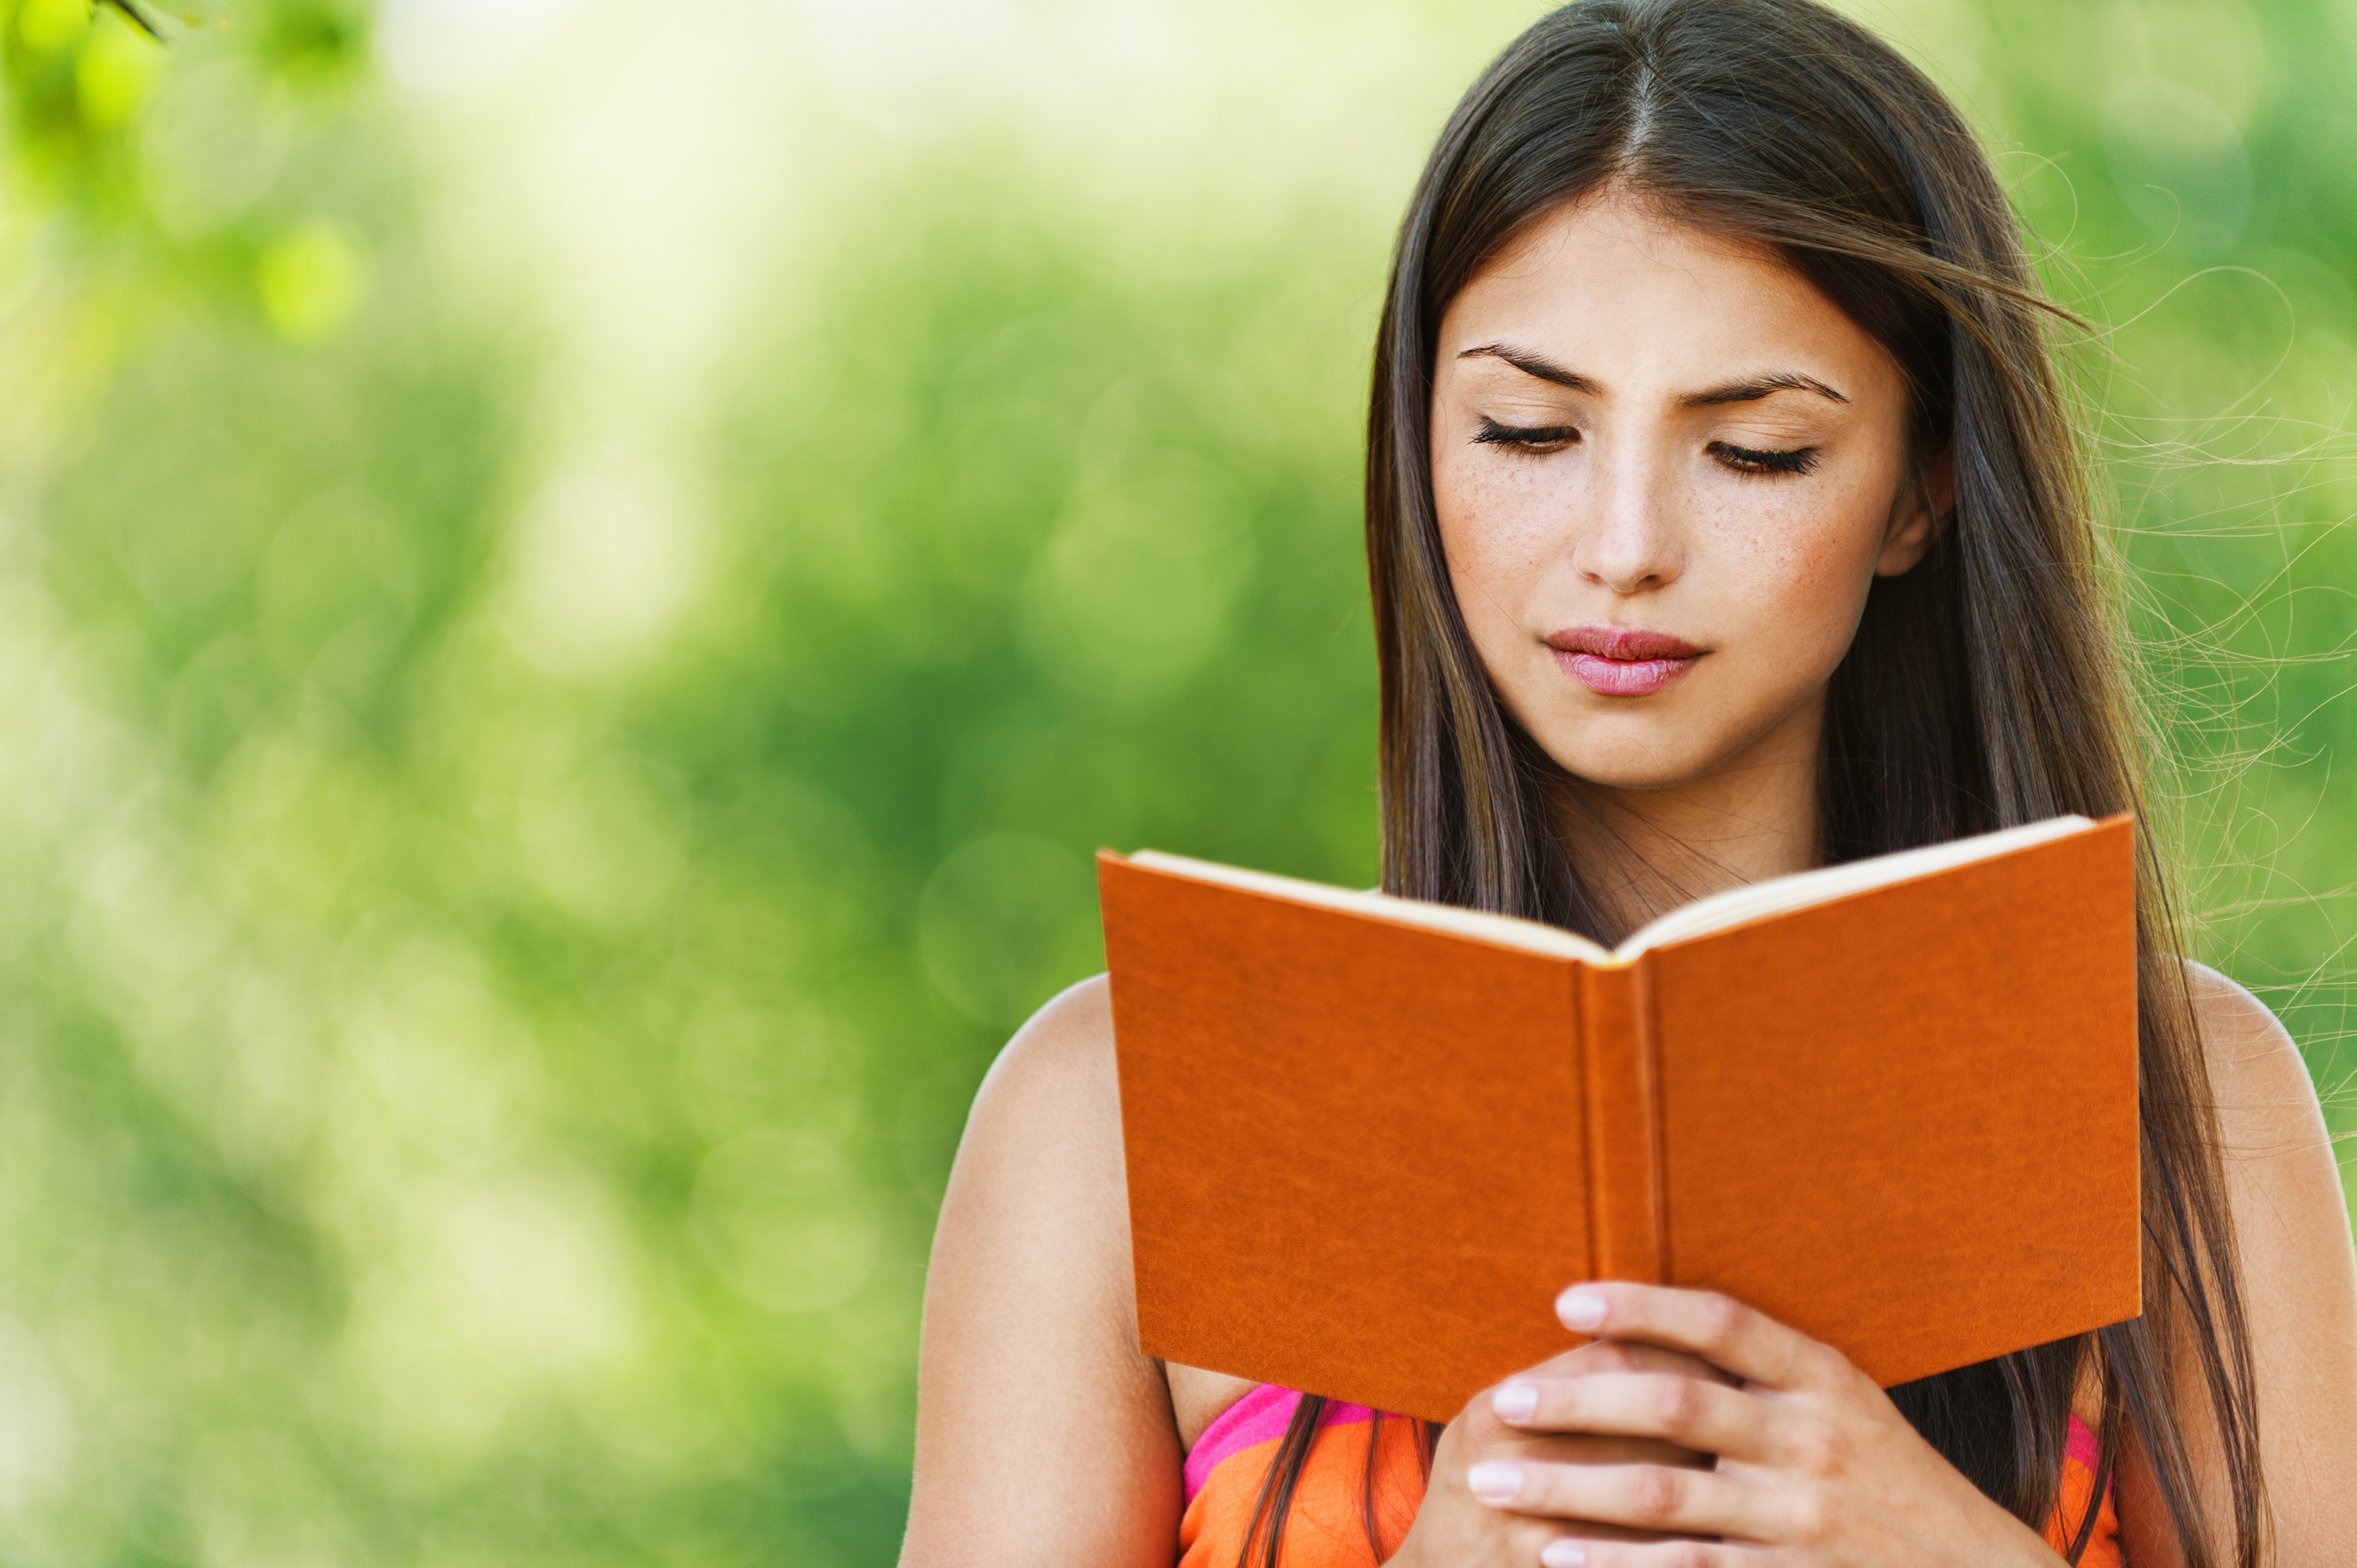 Knigi read book. Девушка с книгой. Женщина с книжкой. Девушка с книгой в руках. Человек с книгой в руках.